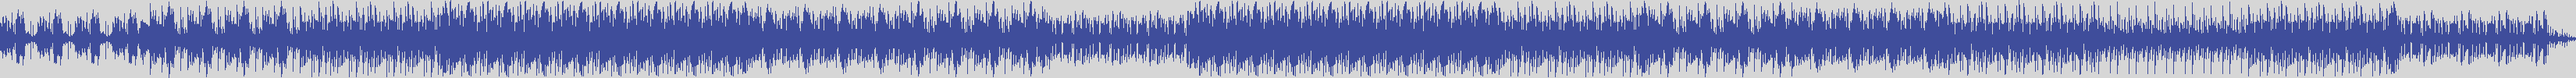 noclouds_chillout [NOC112] Pp Tone - Electro [Original Mix] audio wave form